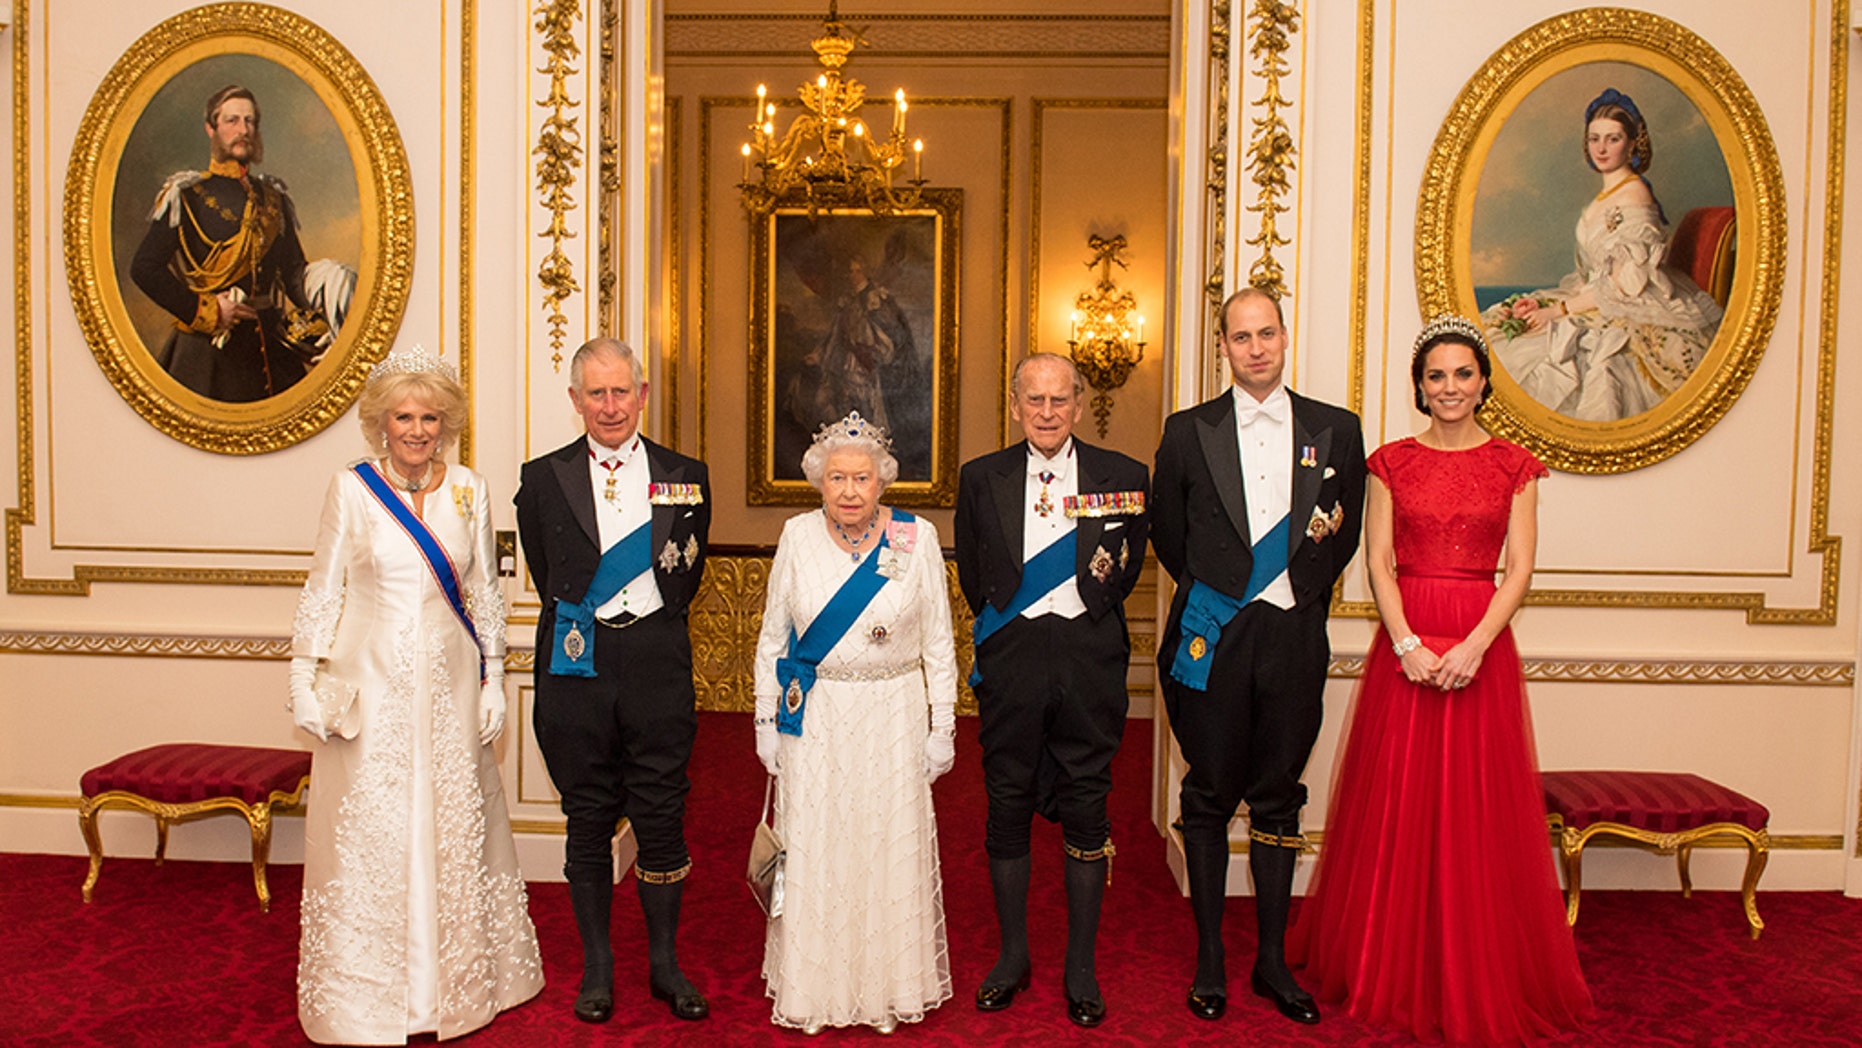 ÙØªÙØ¬Ø© Ø¨Ø­Ø« Ø§ÙØµÙØ± Ø¹Ù âªQueen Elizabeth + Buckingham Palaceâ¬â